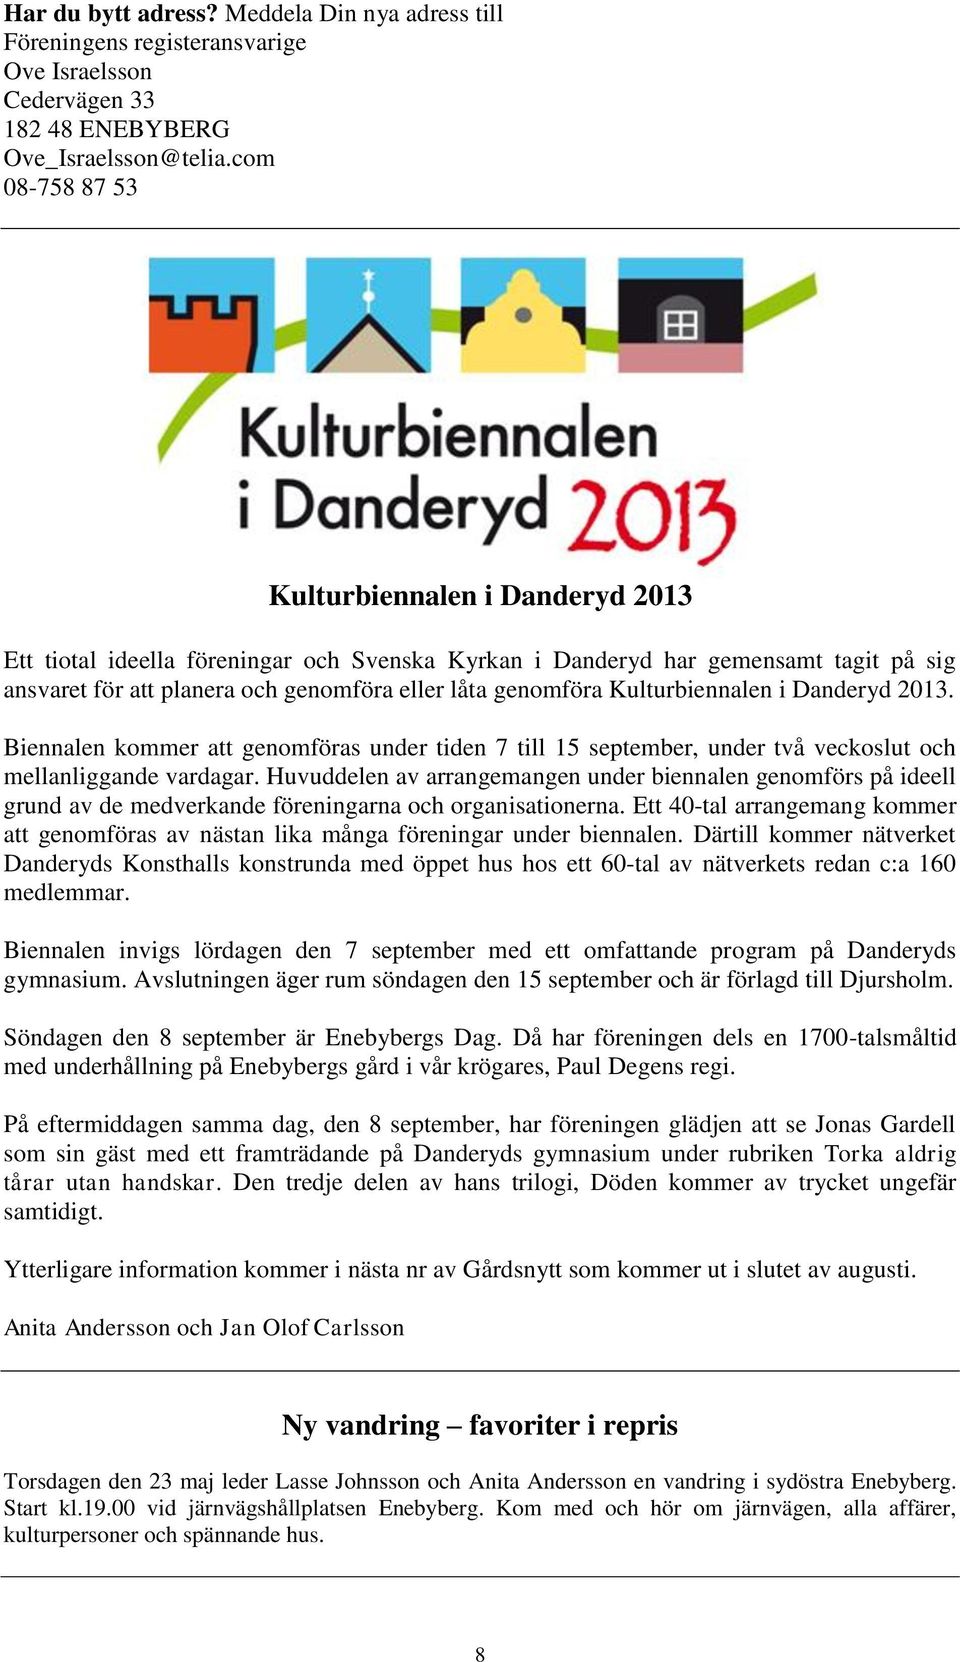 Kulturbiennalen i Danderyd 2013. Biennalen kommer att genomföras under tiden 7 till 15 september, under två veckoslut och mellanliggande vardagar.